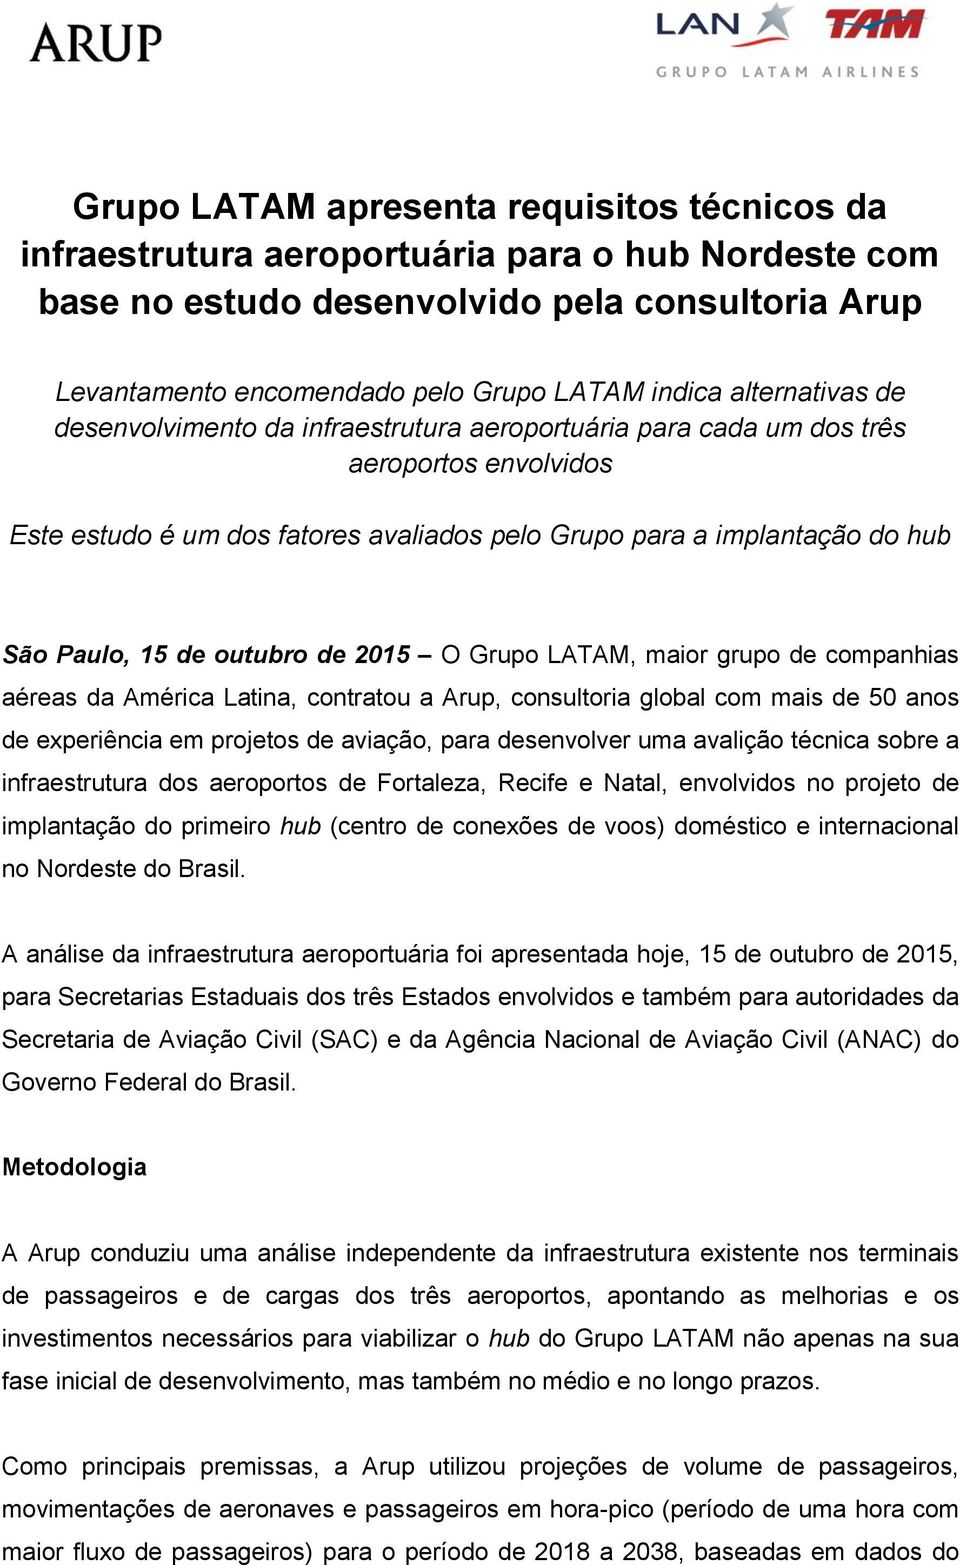 de outubro de 2015 O Grupo LATAM, maior grupo de companhias aéreas da América Latina, contratou a Arup, consultoria global com mais de 50 anos de experiência em projetos de aviação, para desenvolver